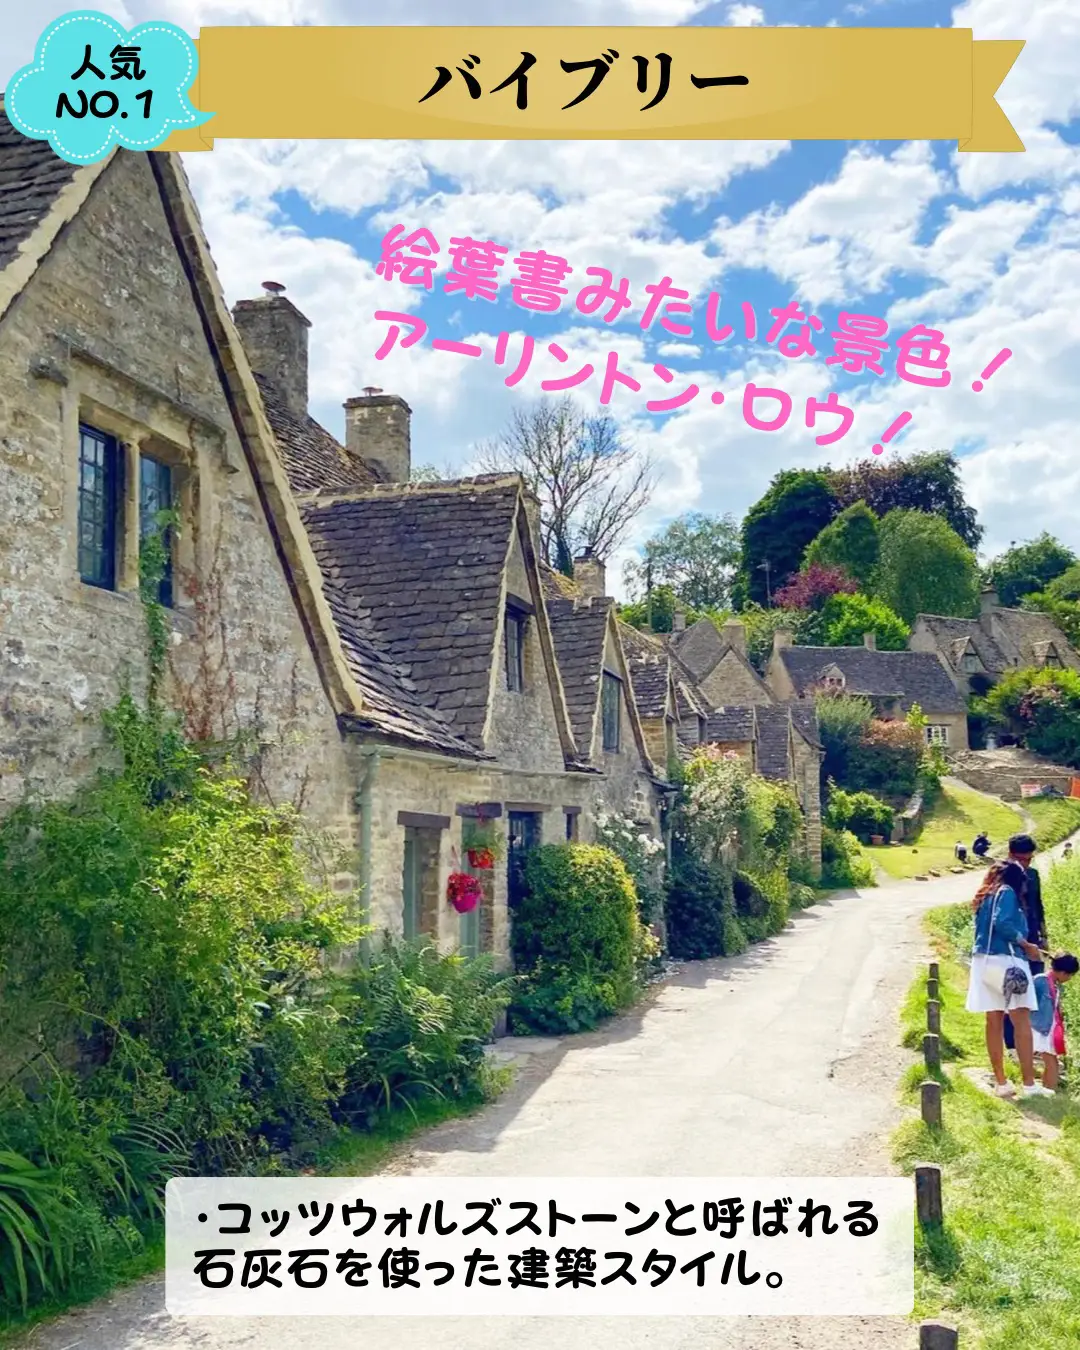 イギリス】 世界一美しい村 コッツウォルズ🇬🇧 | 海外旅行プランナー